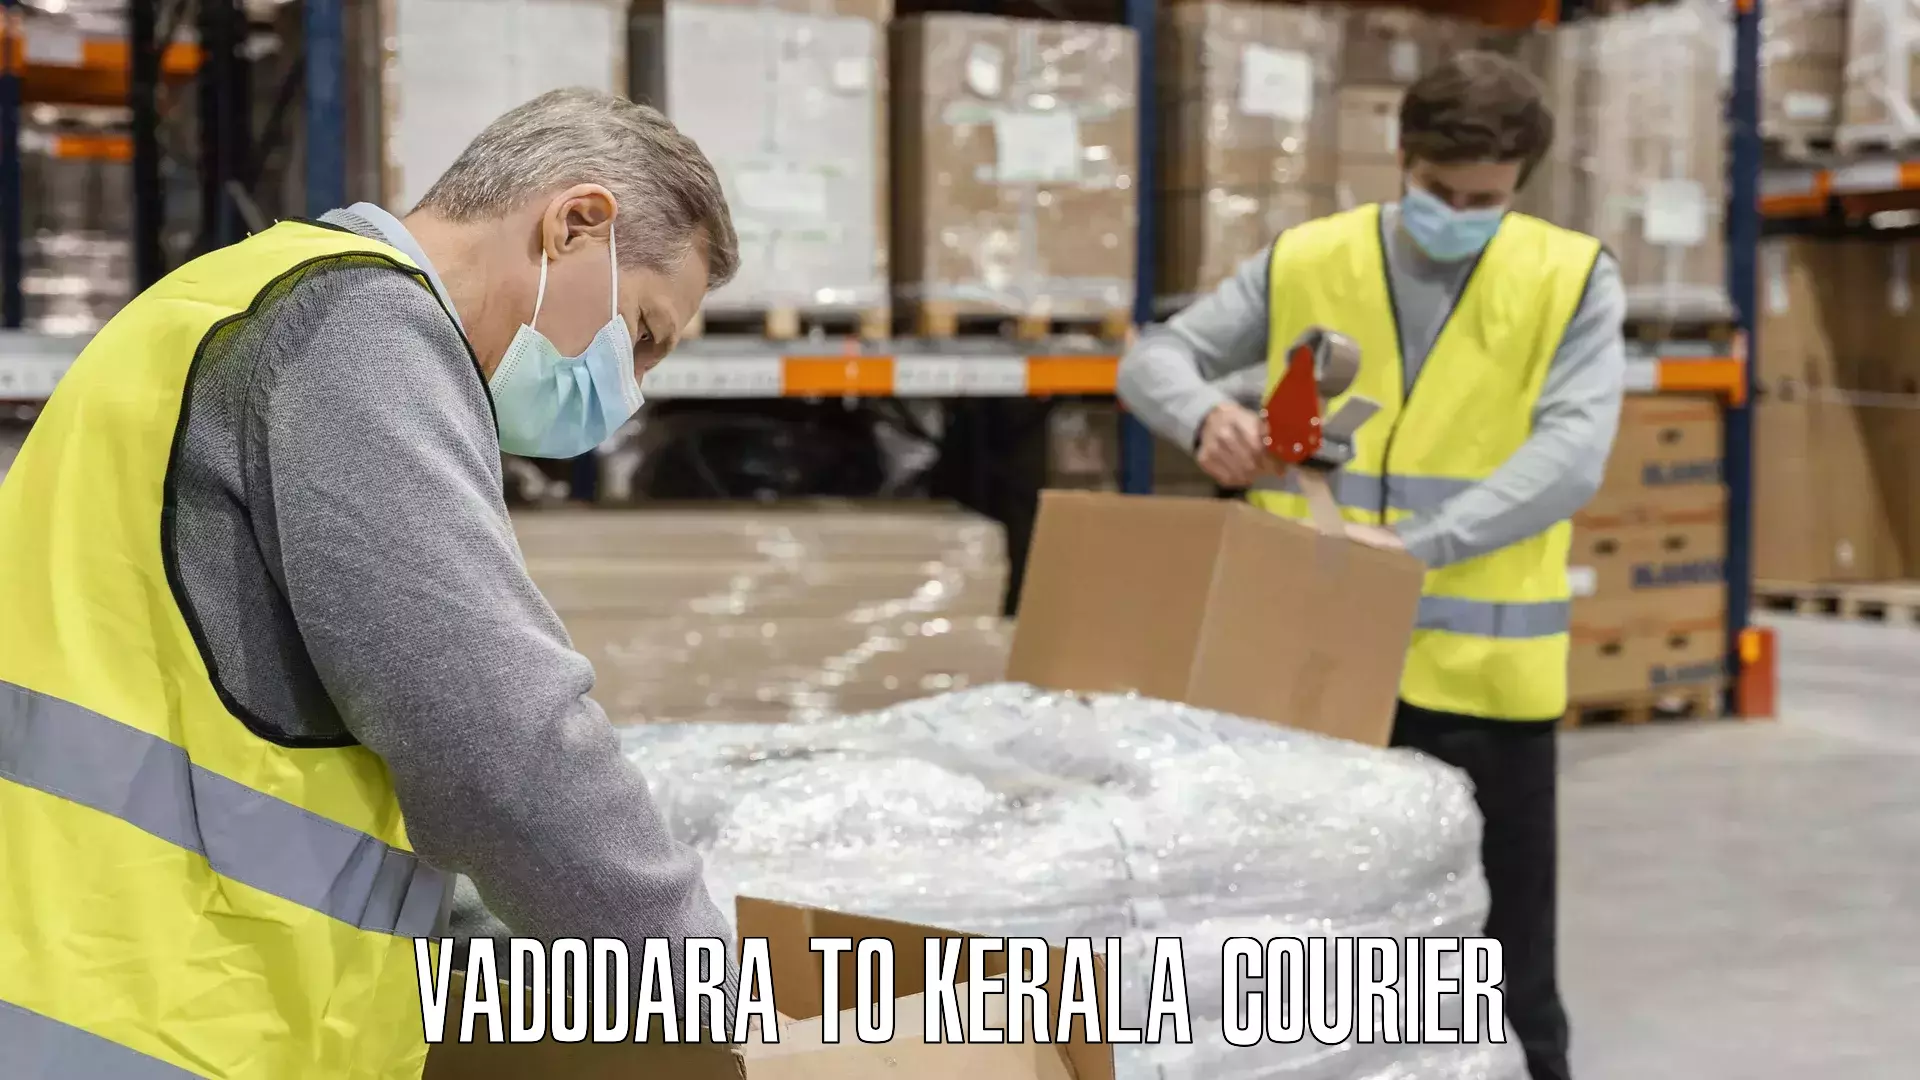 Baggage courier service Vadodara to Kerala